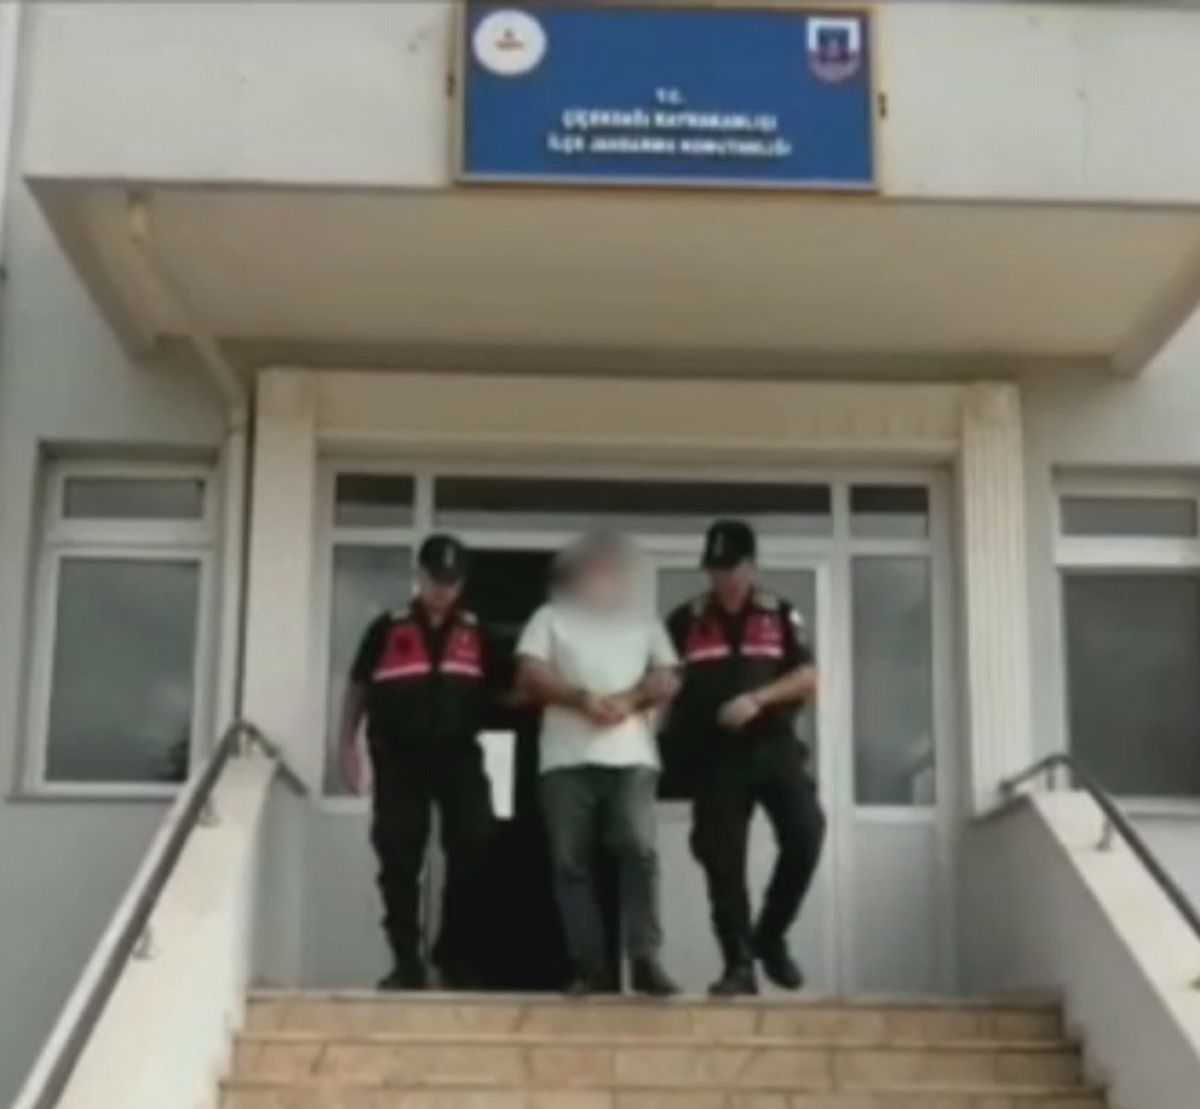 Kırşehir de 14 yıllık cinayeti çocuk felci ayrıntısı çözdü #1